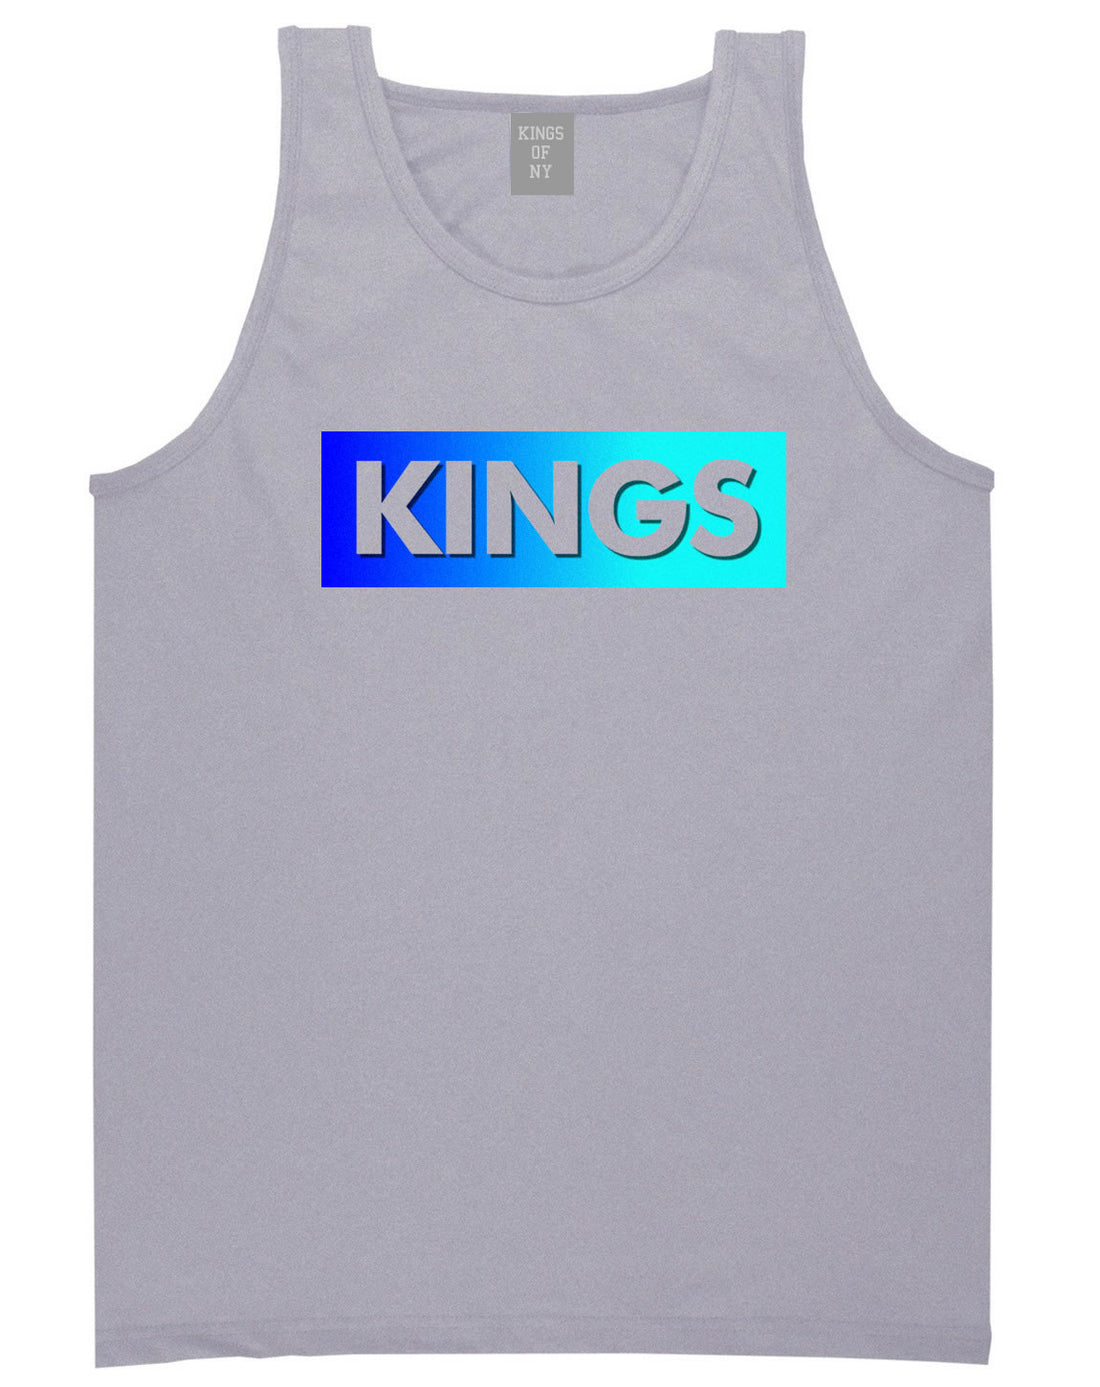 Kings Blue Gradient Tank Top in Grey by Kings Of NY